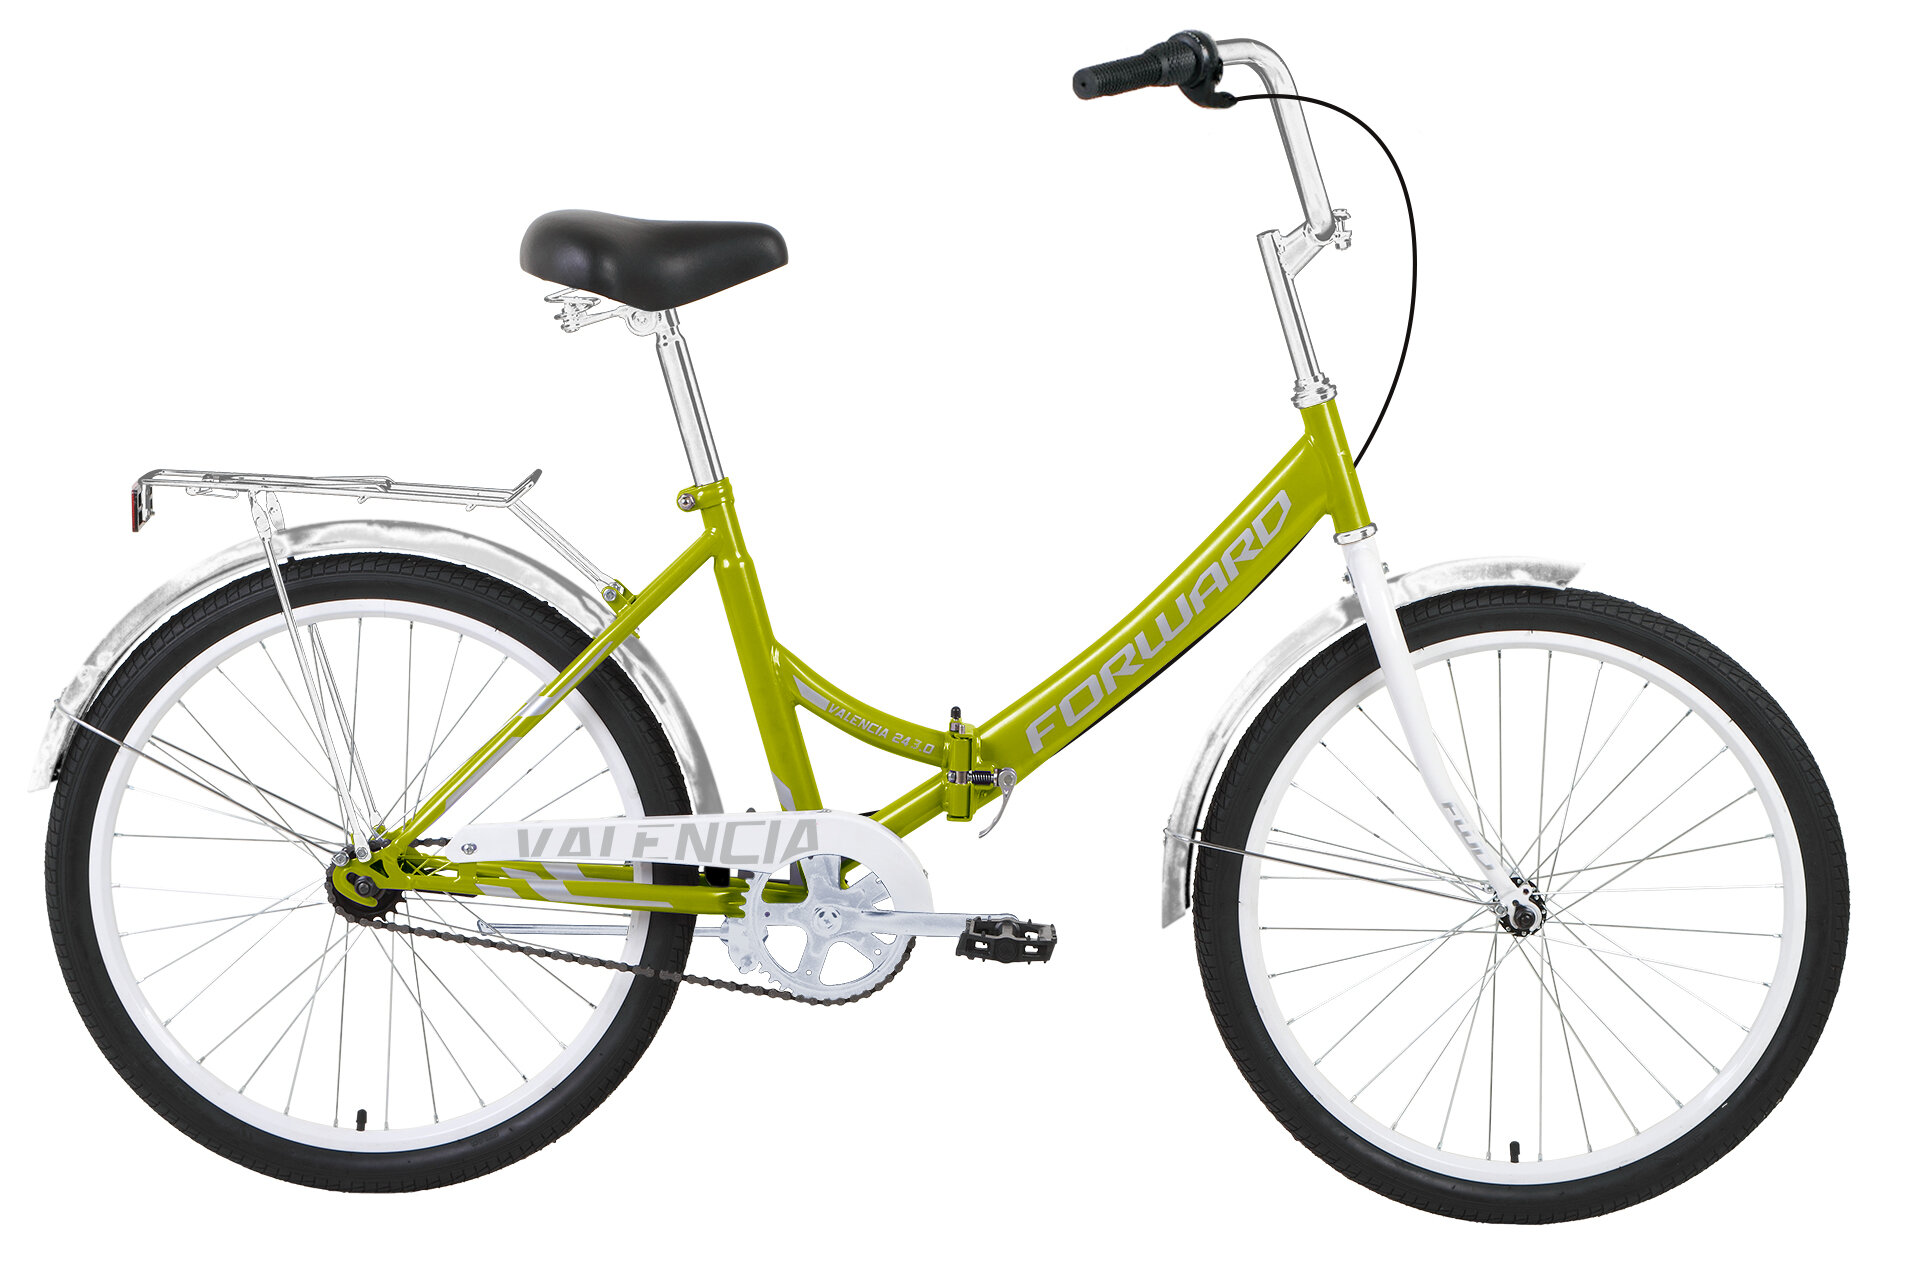 Складной велосипед Forward Valencia 24 3.0, год 2021, цвет Зеленый-Серебристый